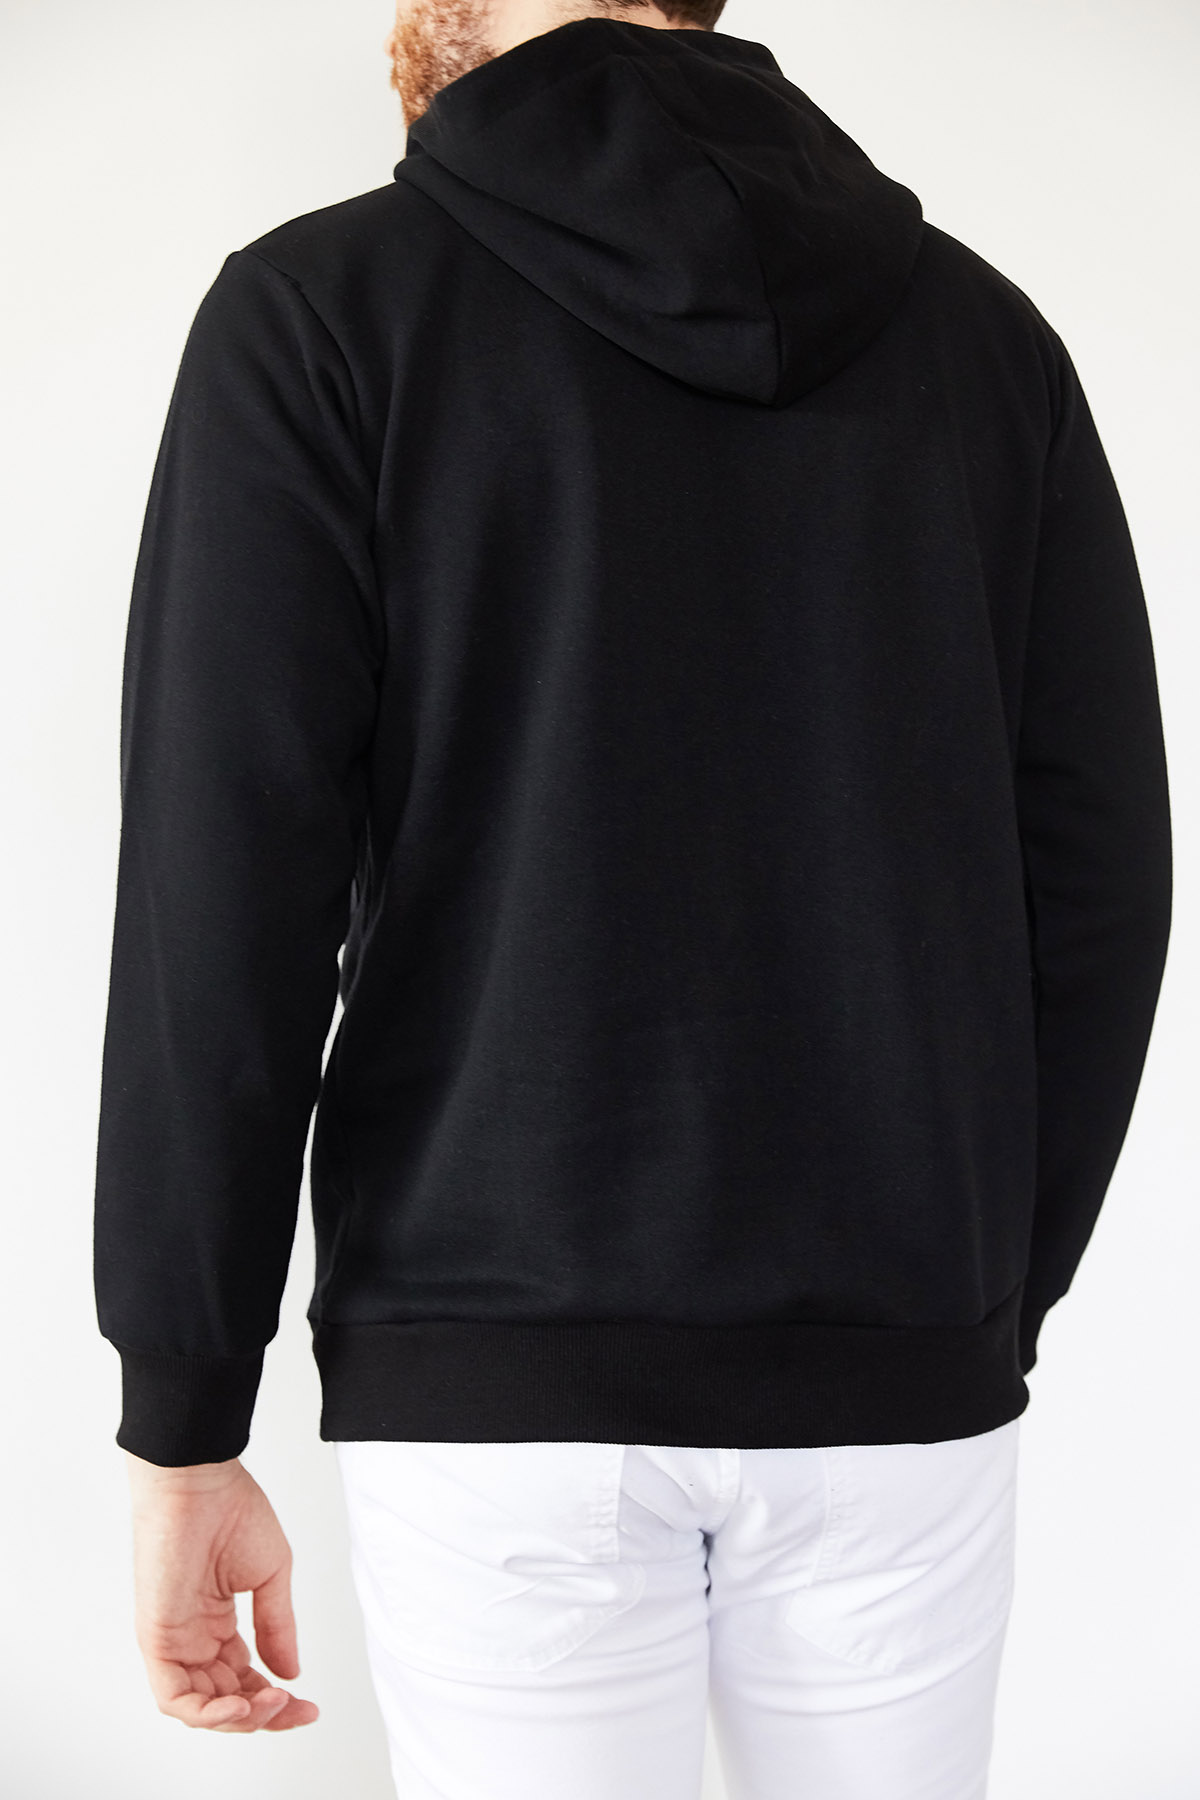 Siyah Geniş Cep Detaylı Üç İplik Kapüşonlu Sweatshirt 1KXE8-44177-02 - 2